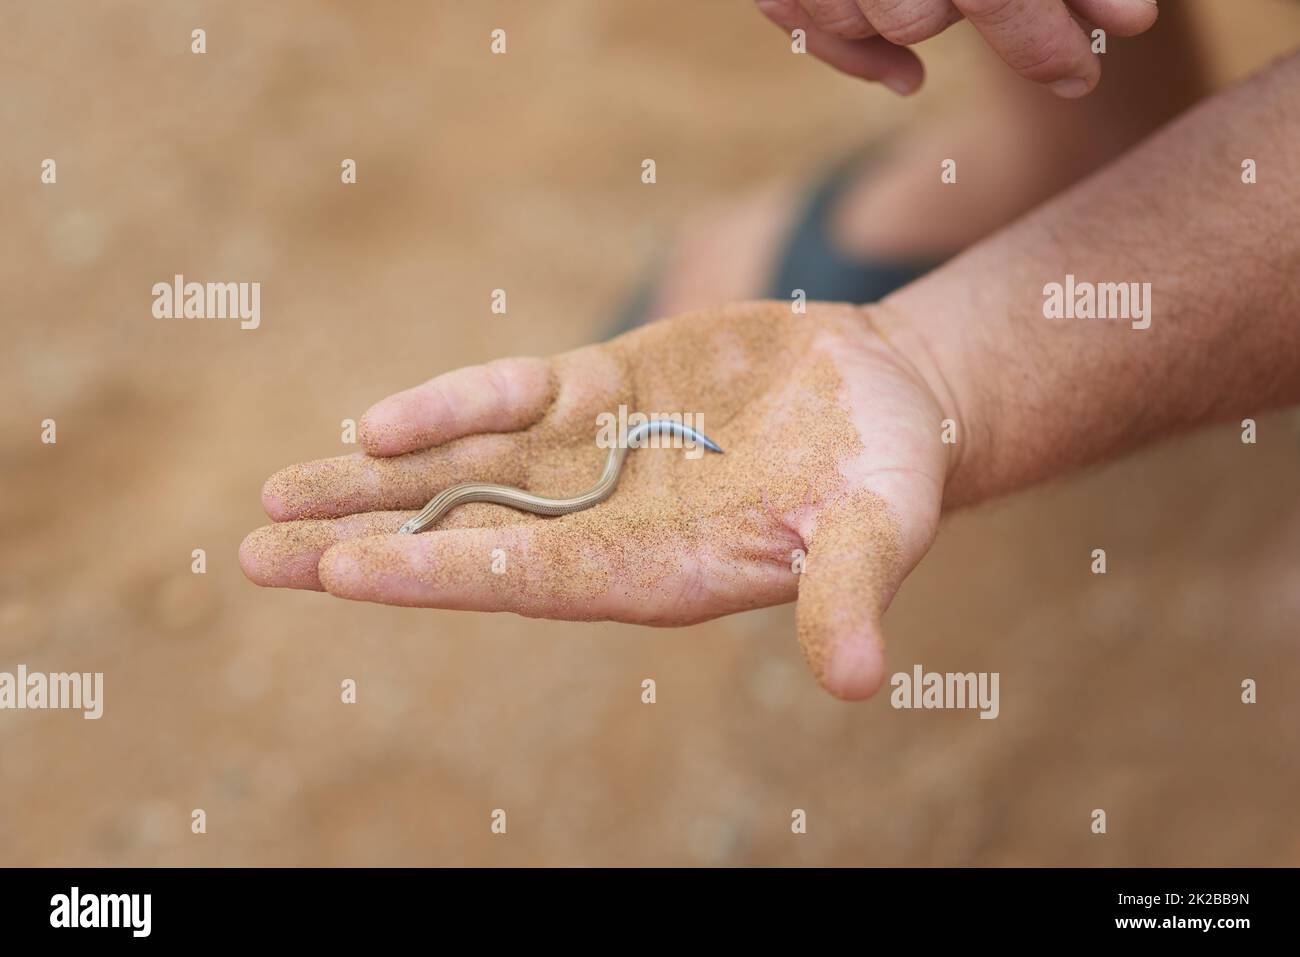 Pas besoin de craindre ce petit gars. Photo d'un homme non identifiable tenant un petit serpent dans la paume de sa main tout en explorant le désert. Banque D'Images